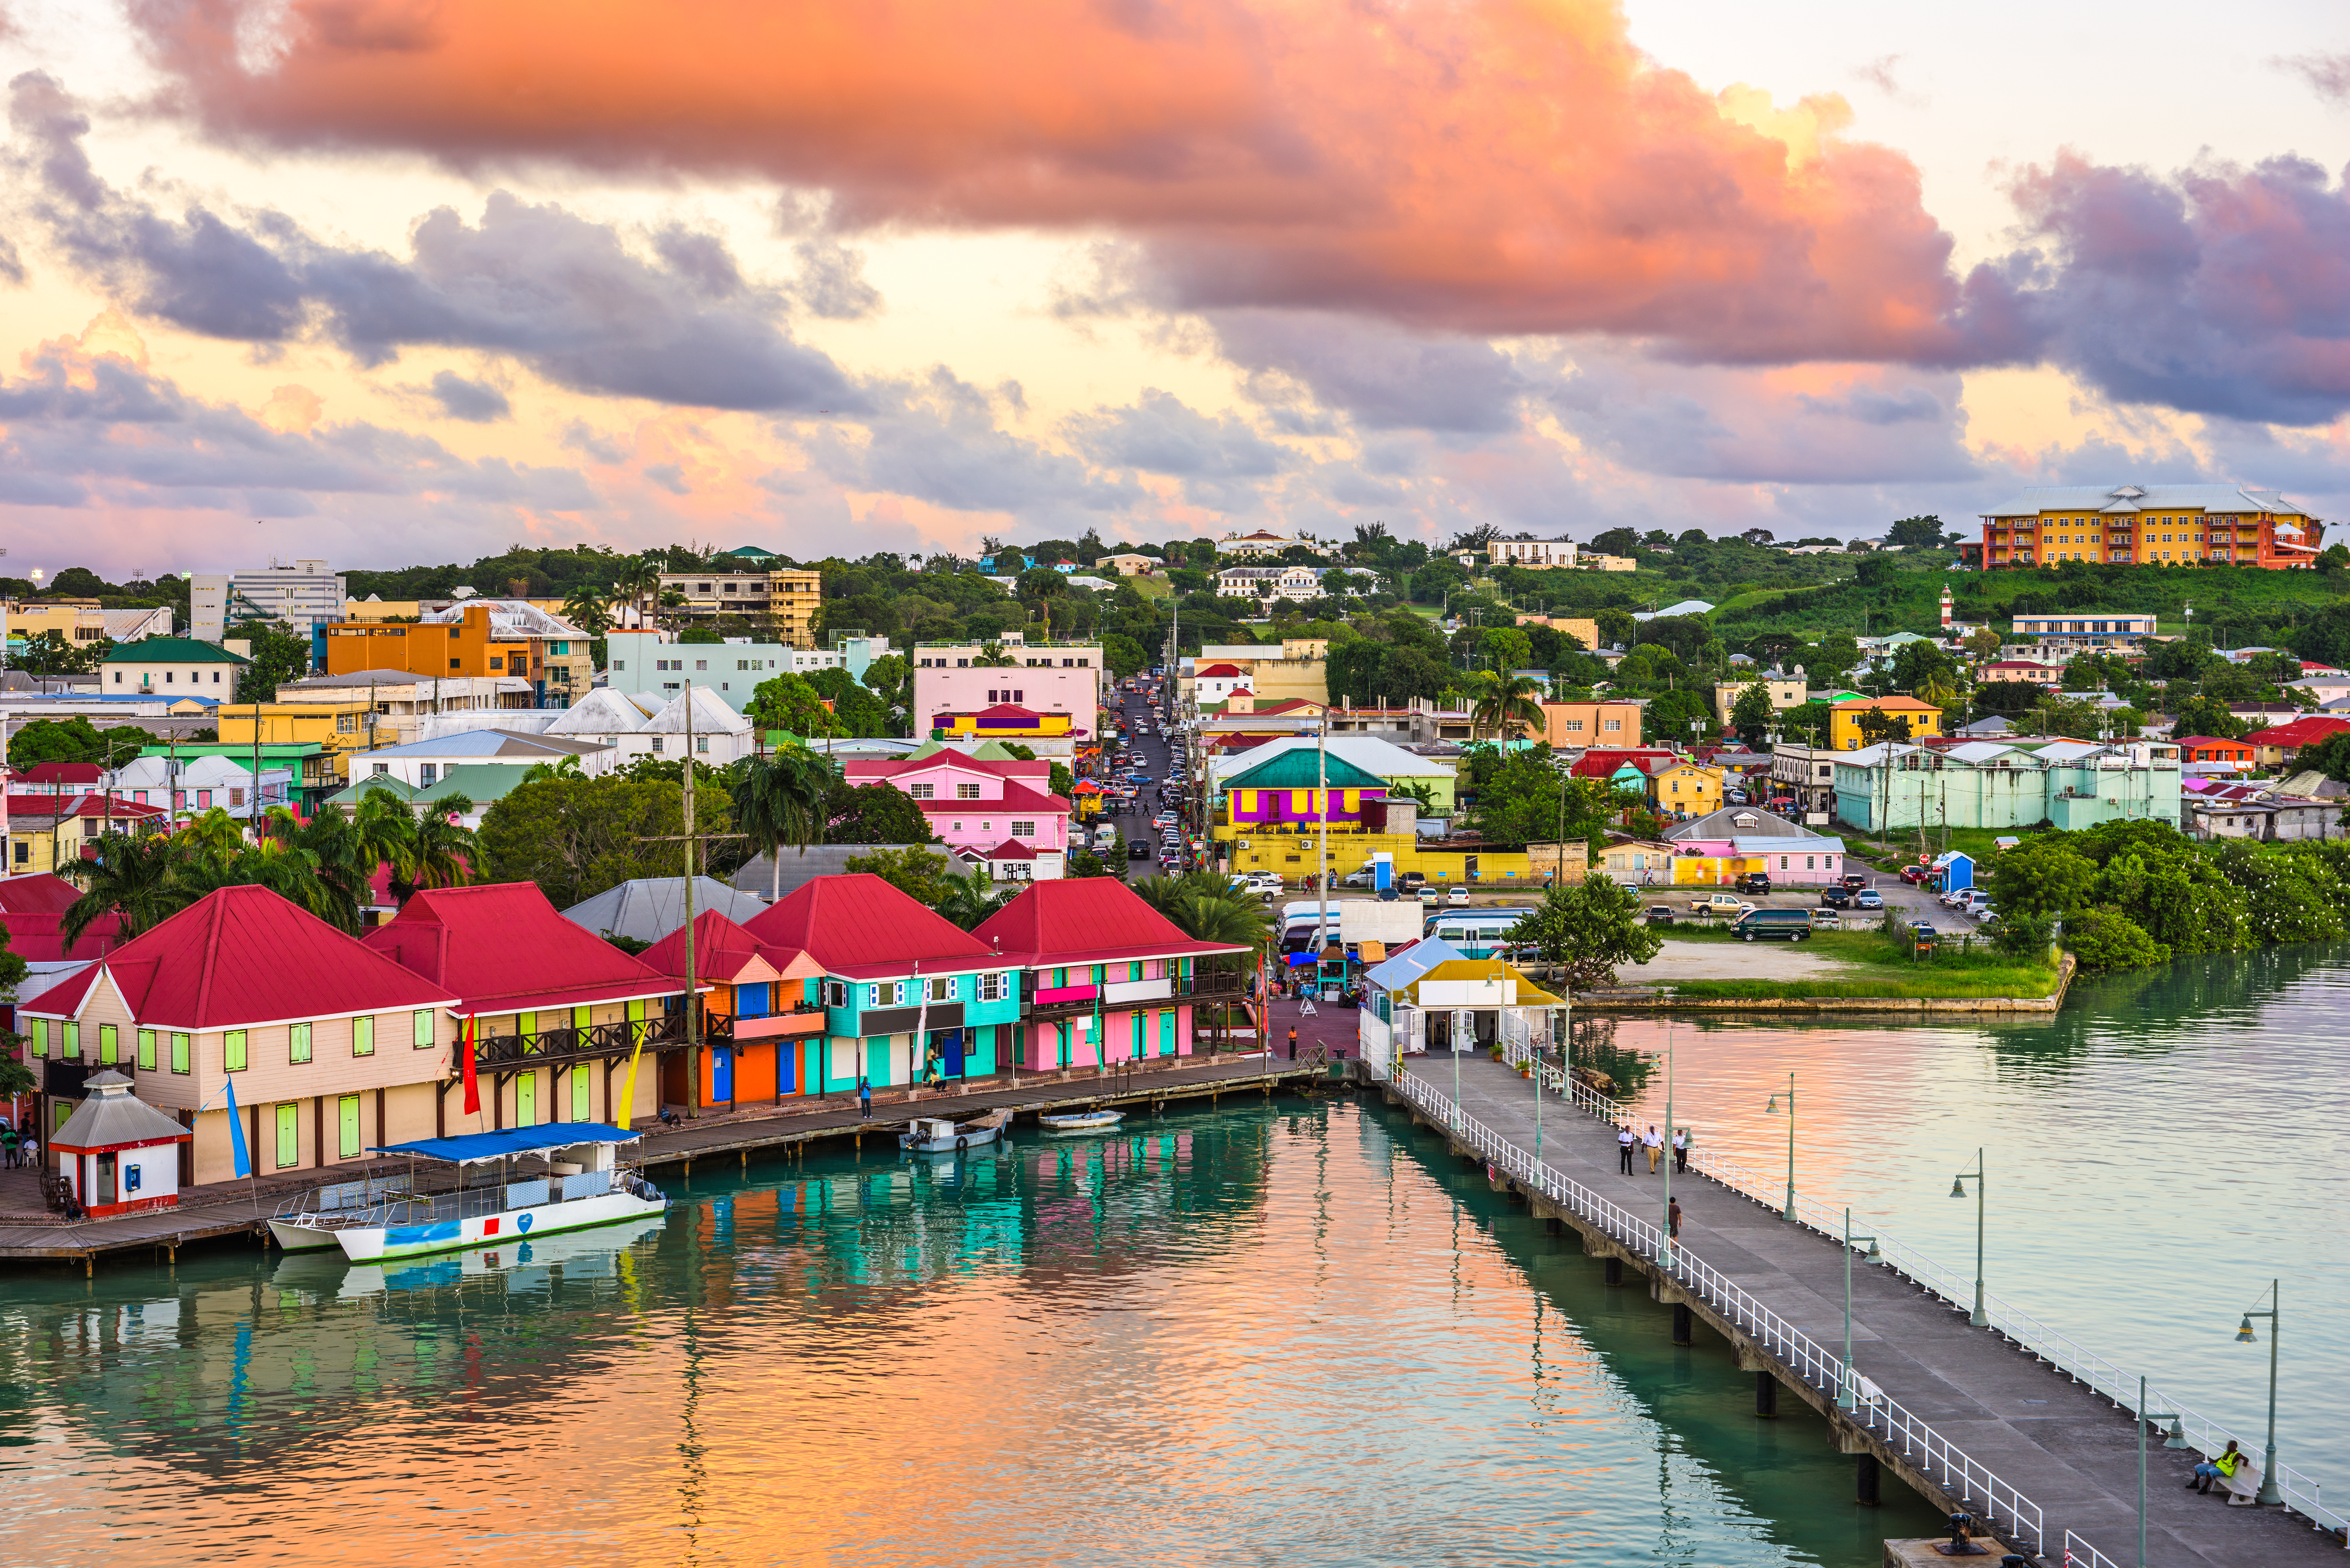     Antigua-et-Barbuda impose la vaccination obligatoire à tous les fonctionnaires

